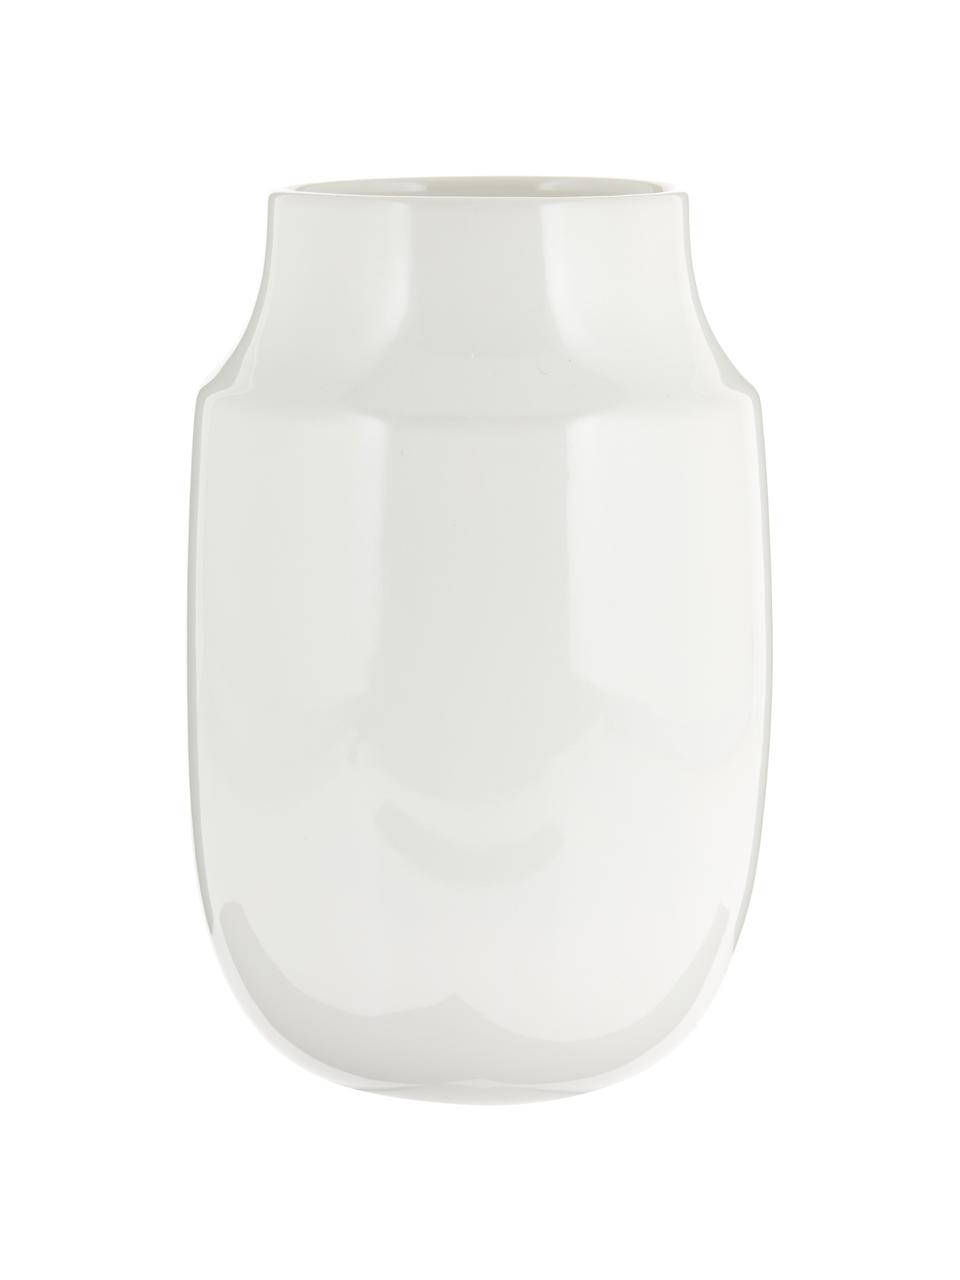 Handgemachte Vase Valeria, Keramik, Weiß, glänzend, Ø 13 x H 20 cm